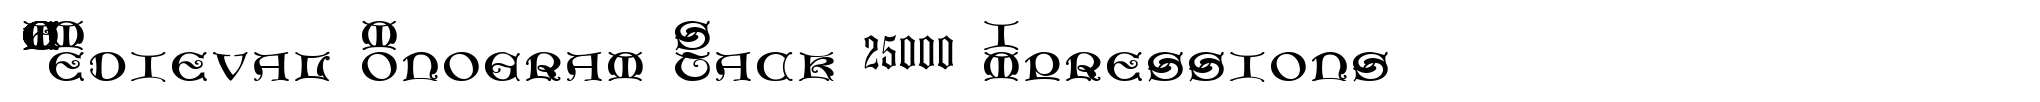 MFC Medieval Monogram Stack 25000 Impressions image